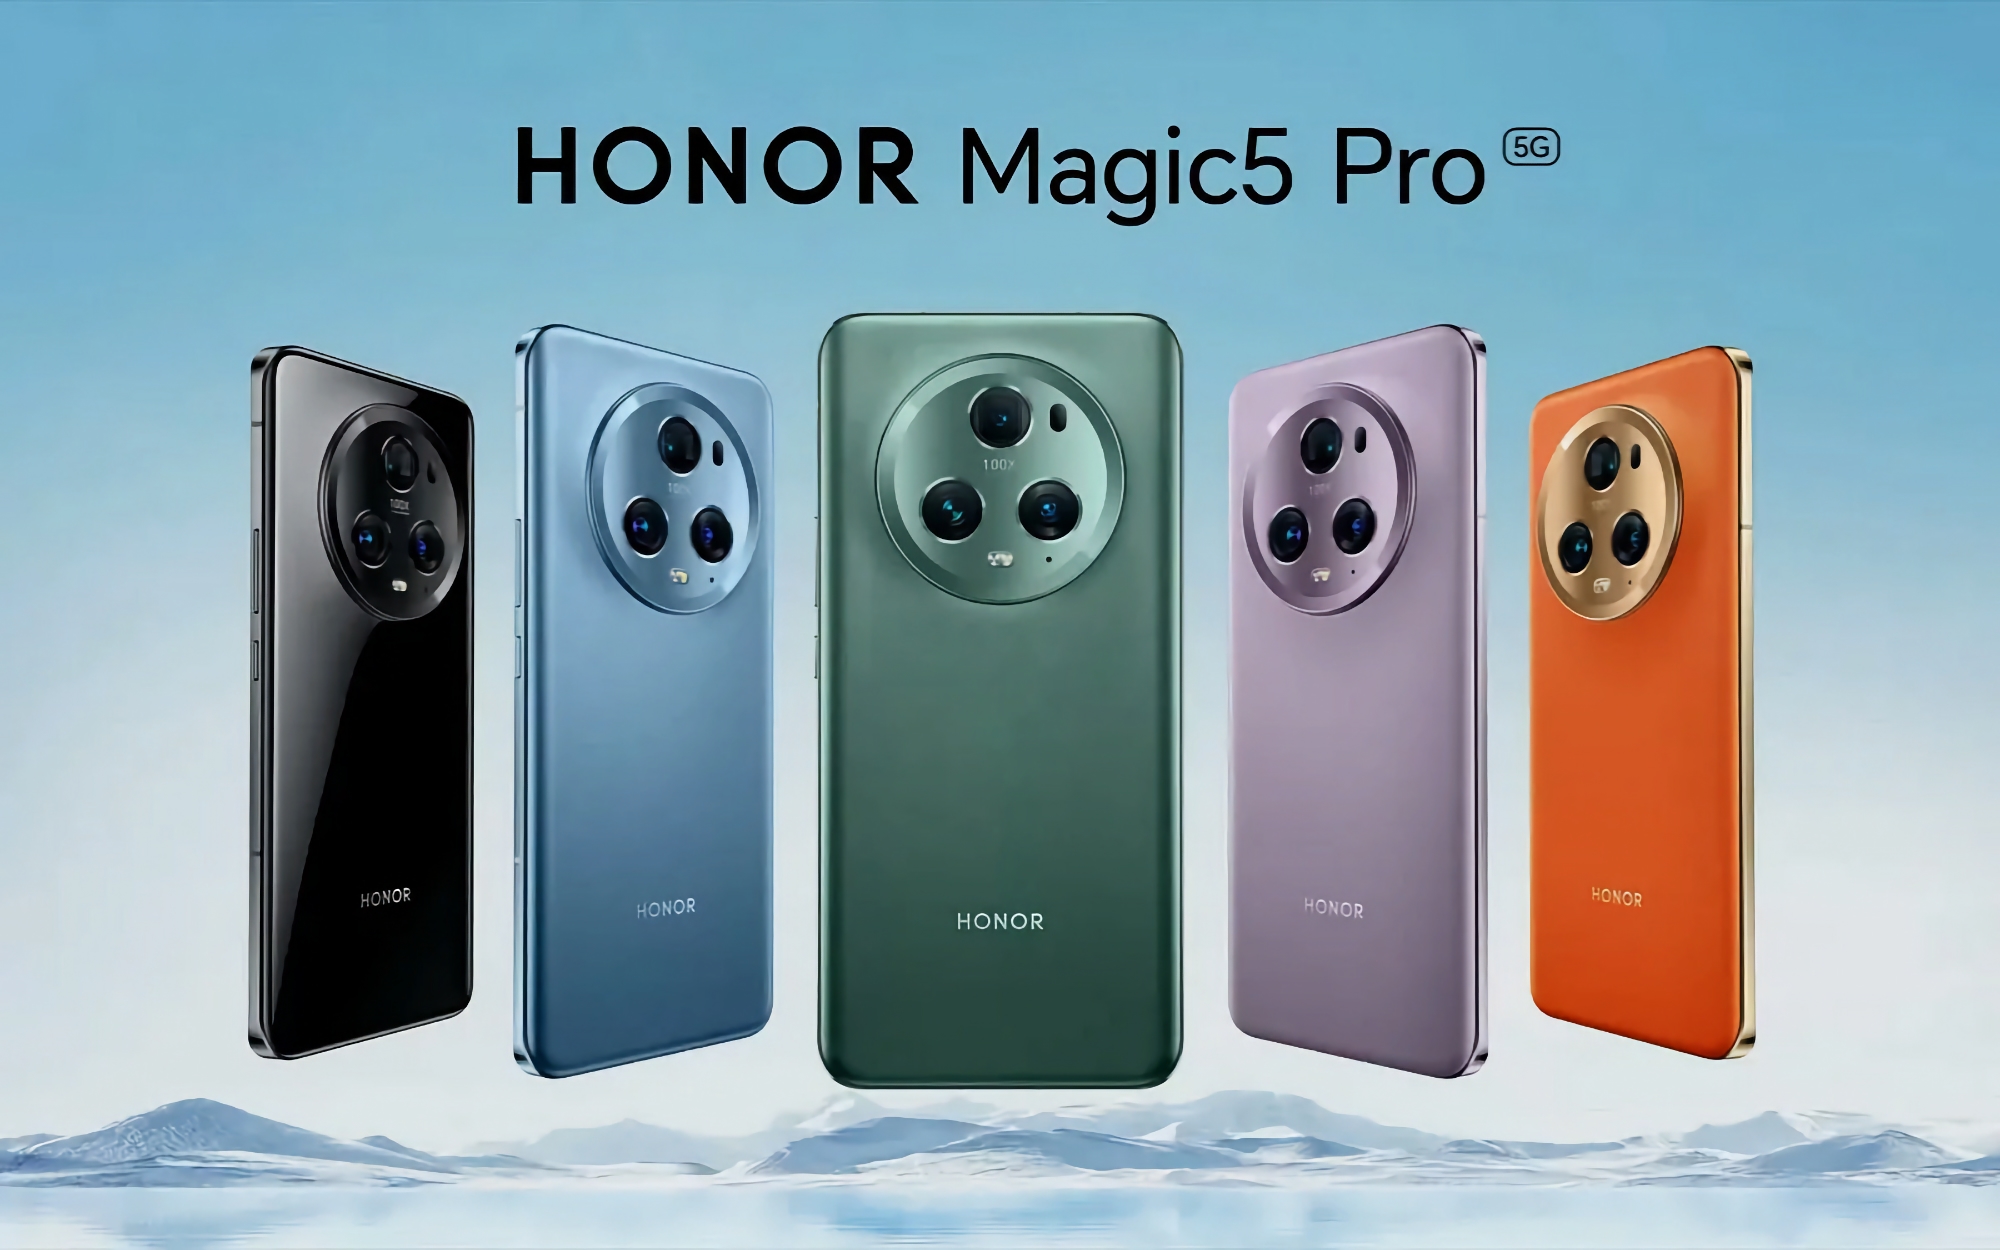 Los usuarios del Honor Magic 5 Pro en el mercado global han comenzado a recibir MagicOS 8.0 basado en Android 14